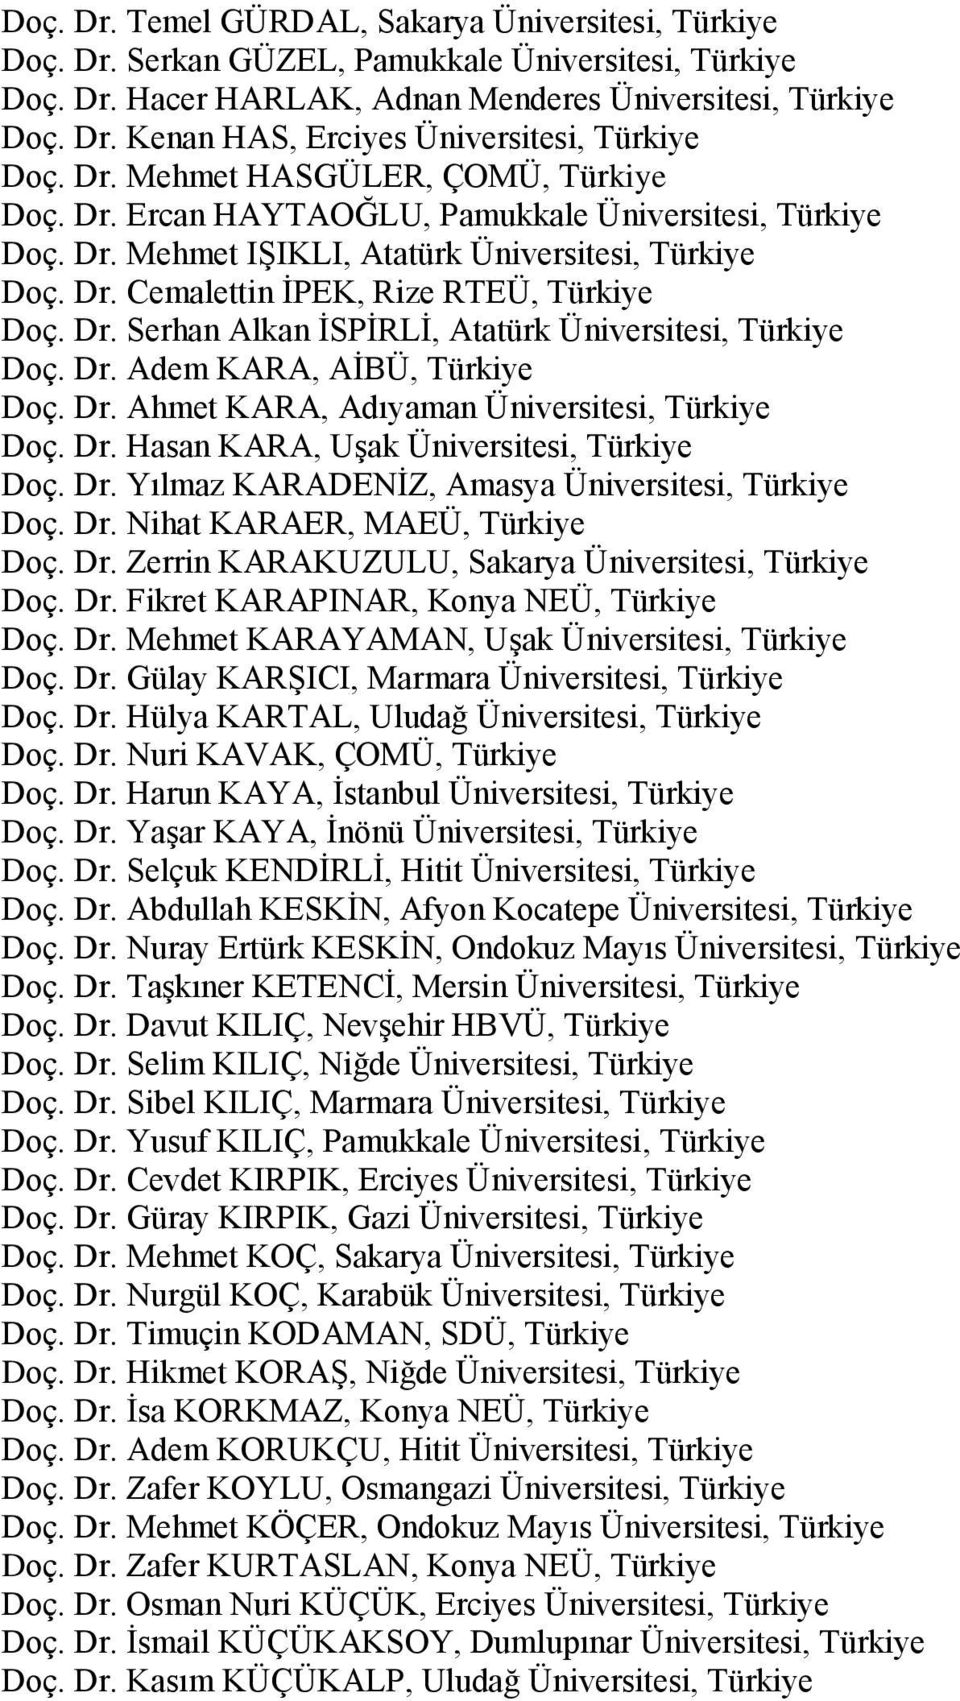 Dr. Adem KARA, AİBÜ, Türkiye Doç. Dr. Ahmet KARA, Adıyaman Üniversitesi, Türkiye Doç. Dr. Hasan KARA, Uşak Üniversitesi, Türkiye Doç. Dr. Yılmaz KARADENİZ, Amasya Üniversitesi, Türkiye Doç. Dr. Nihat KARAER, MAEÜ, Türkiye Doç.